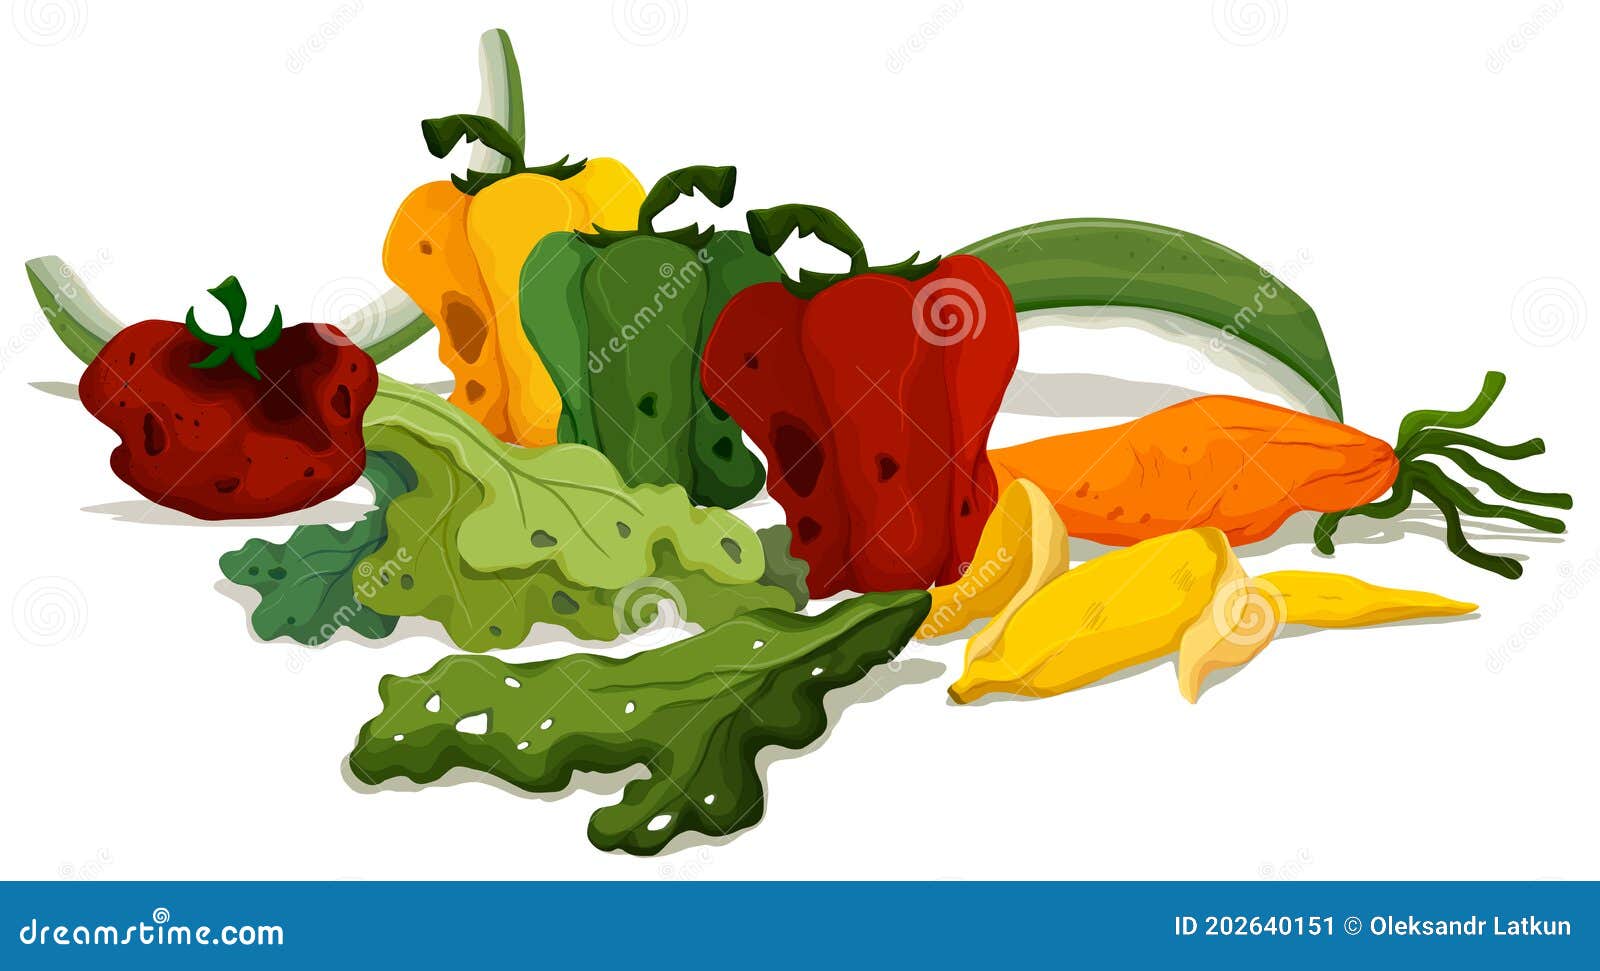 Les Légumes Pourri Sur L'illustration De Plancher Illustration de Vecteur -  Illustration du retrait, détritus: 202640151